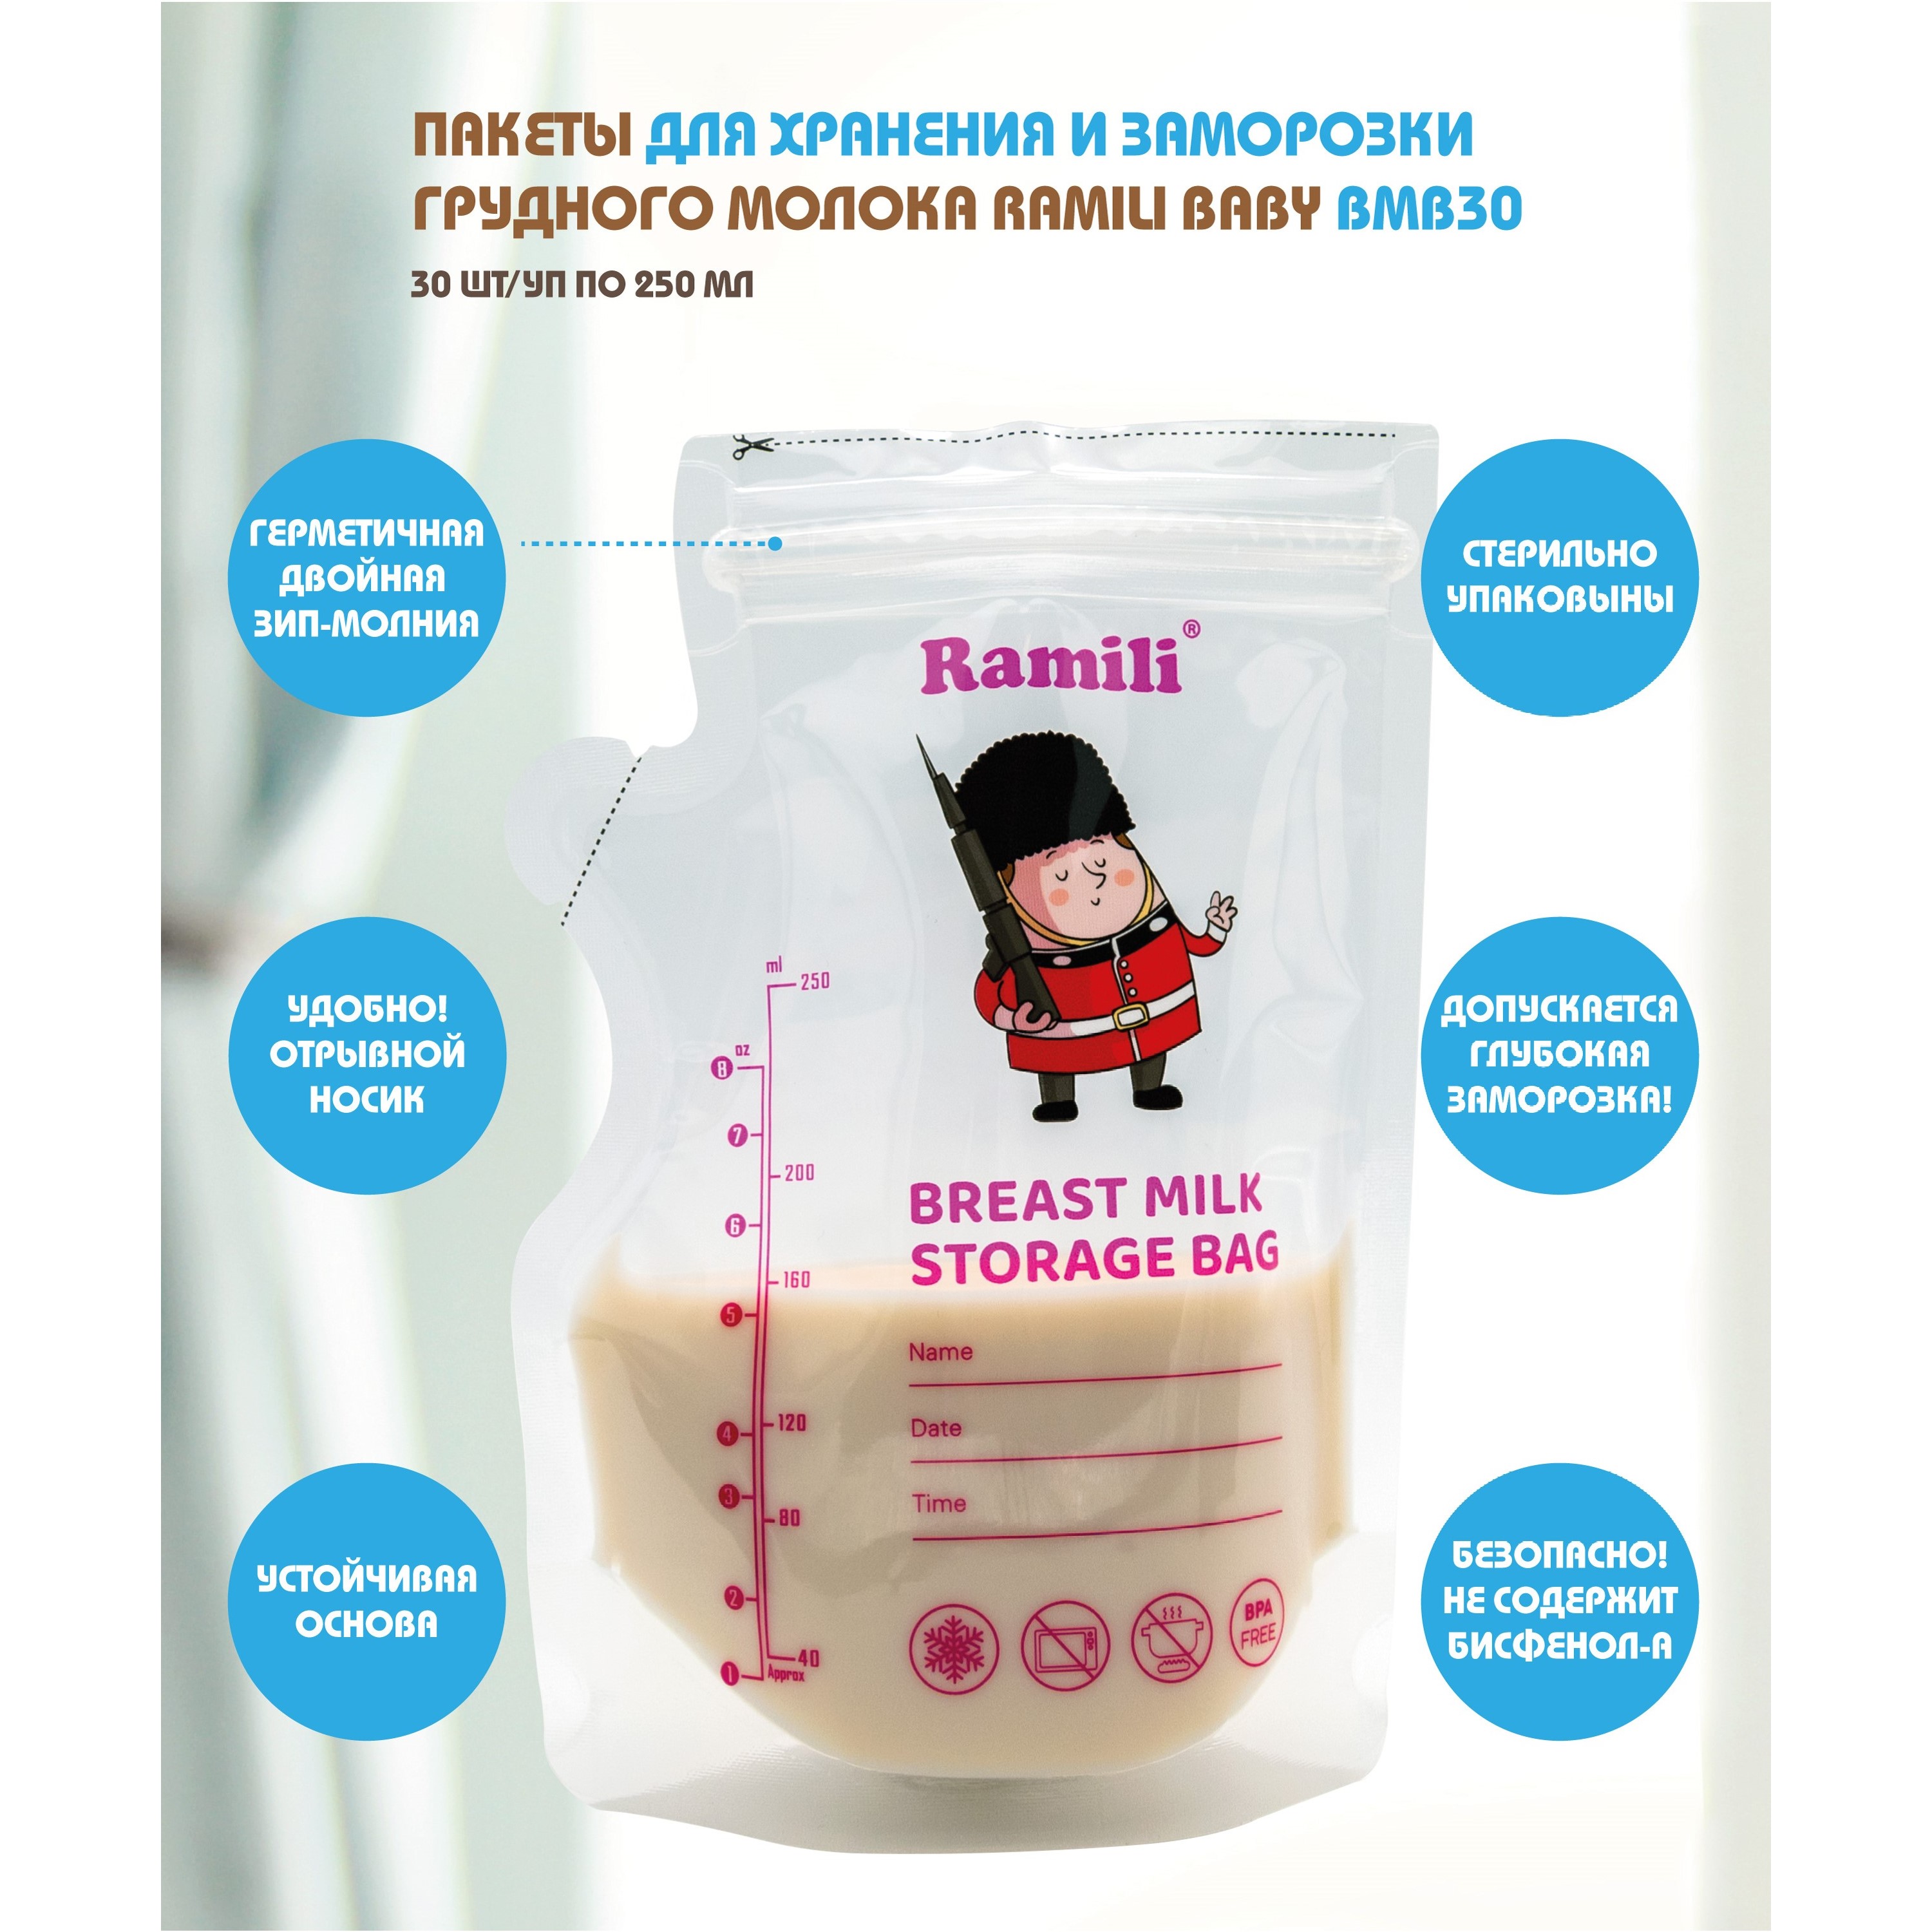 Пакеты для хранения и заморозки грудного молока Ramili Baby BMB30 пакеты для грудного молока happy baby для хранения и заморозки набор 30 шт 200мл